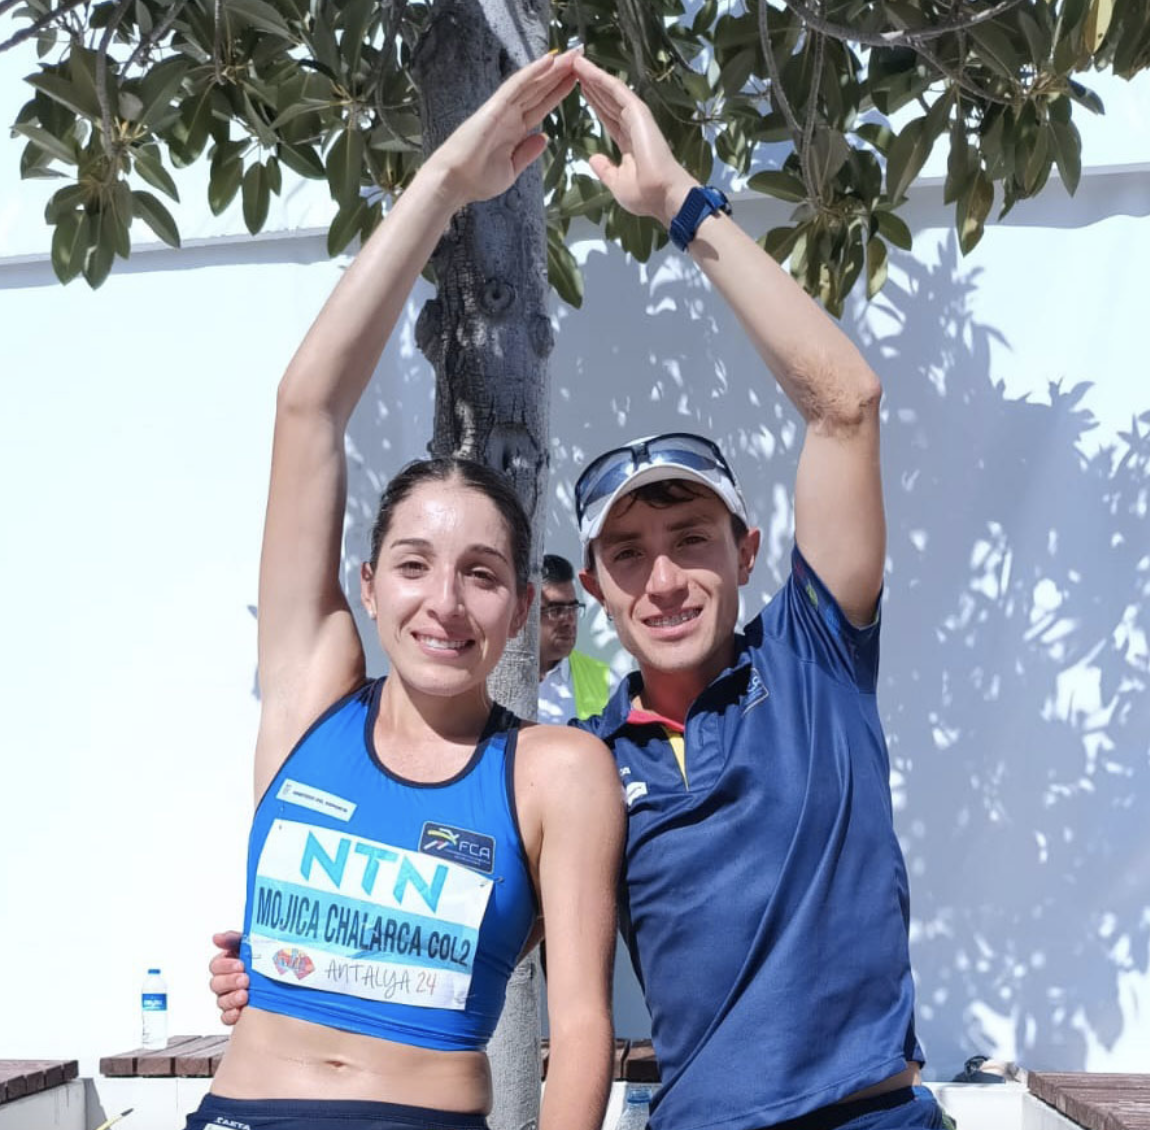 Laura Chalarca y César Herrera, equipo 1 de Colombia clasificado a París 2024.